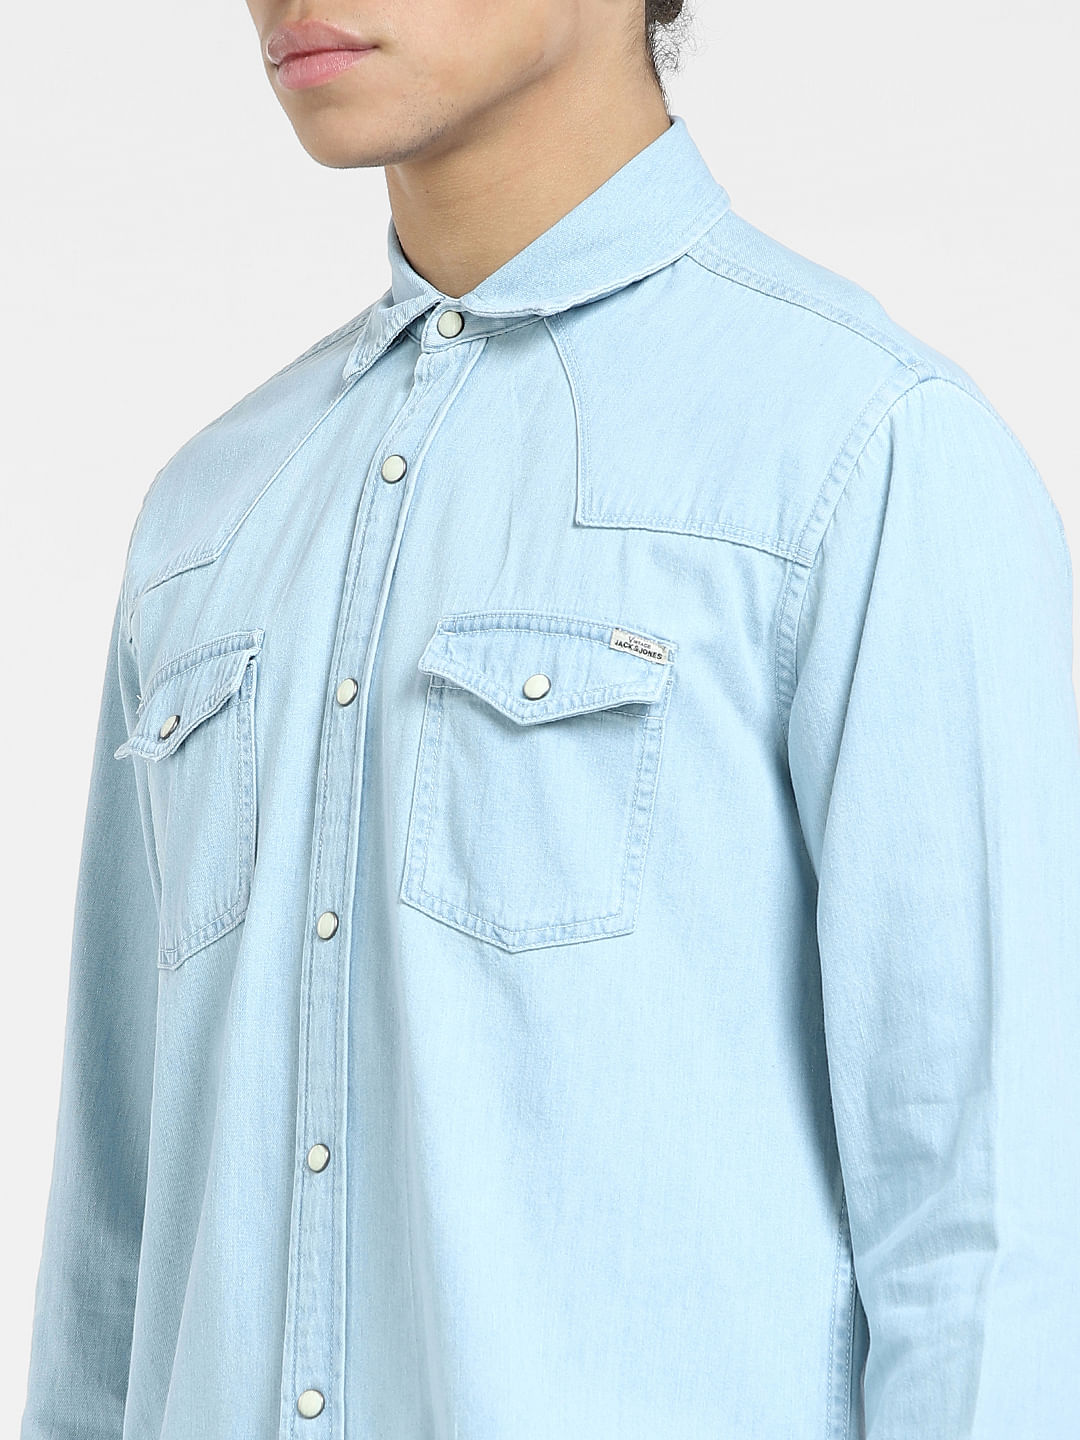 424 denim shirt men's blue color 35424EJ01L1.236545 | buy on PRM